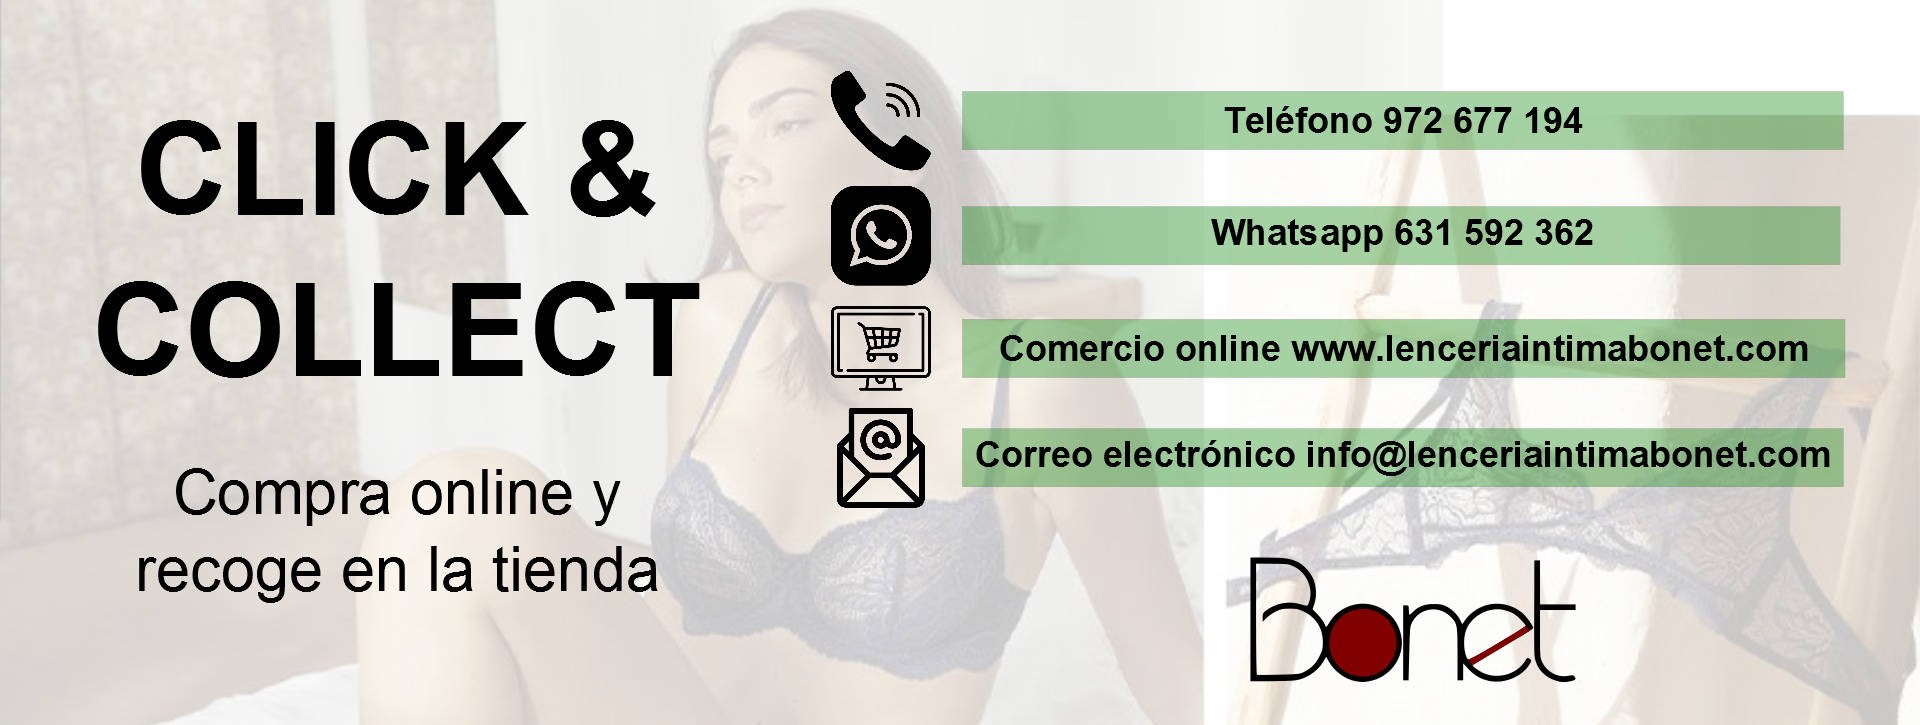 Servicio de click & collect: compra online y recoge en la tienda de Lencería Bonet